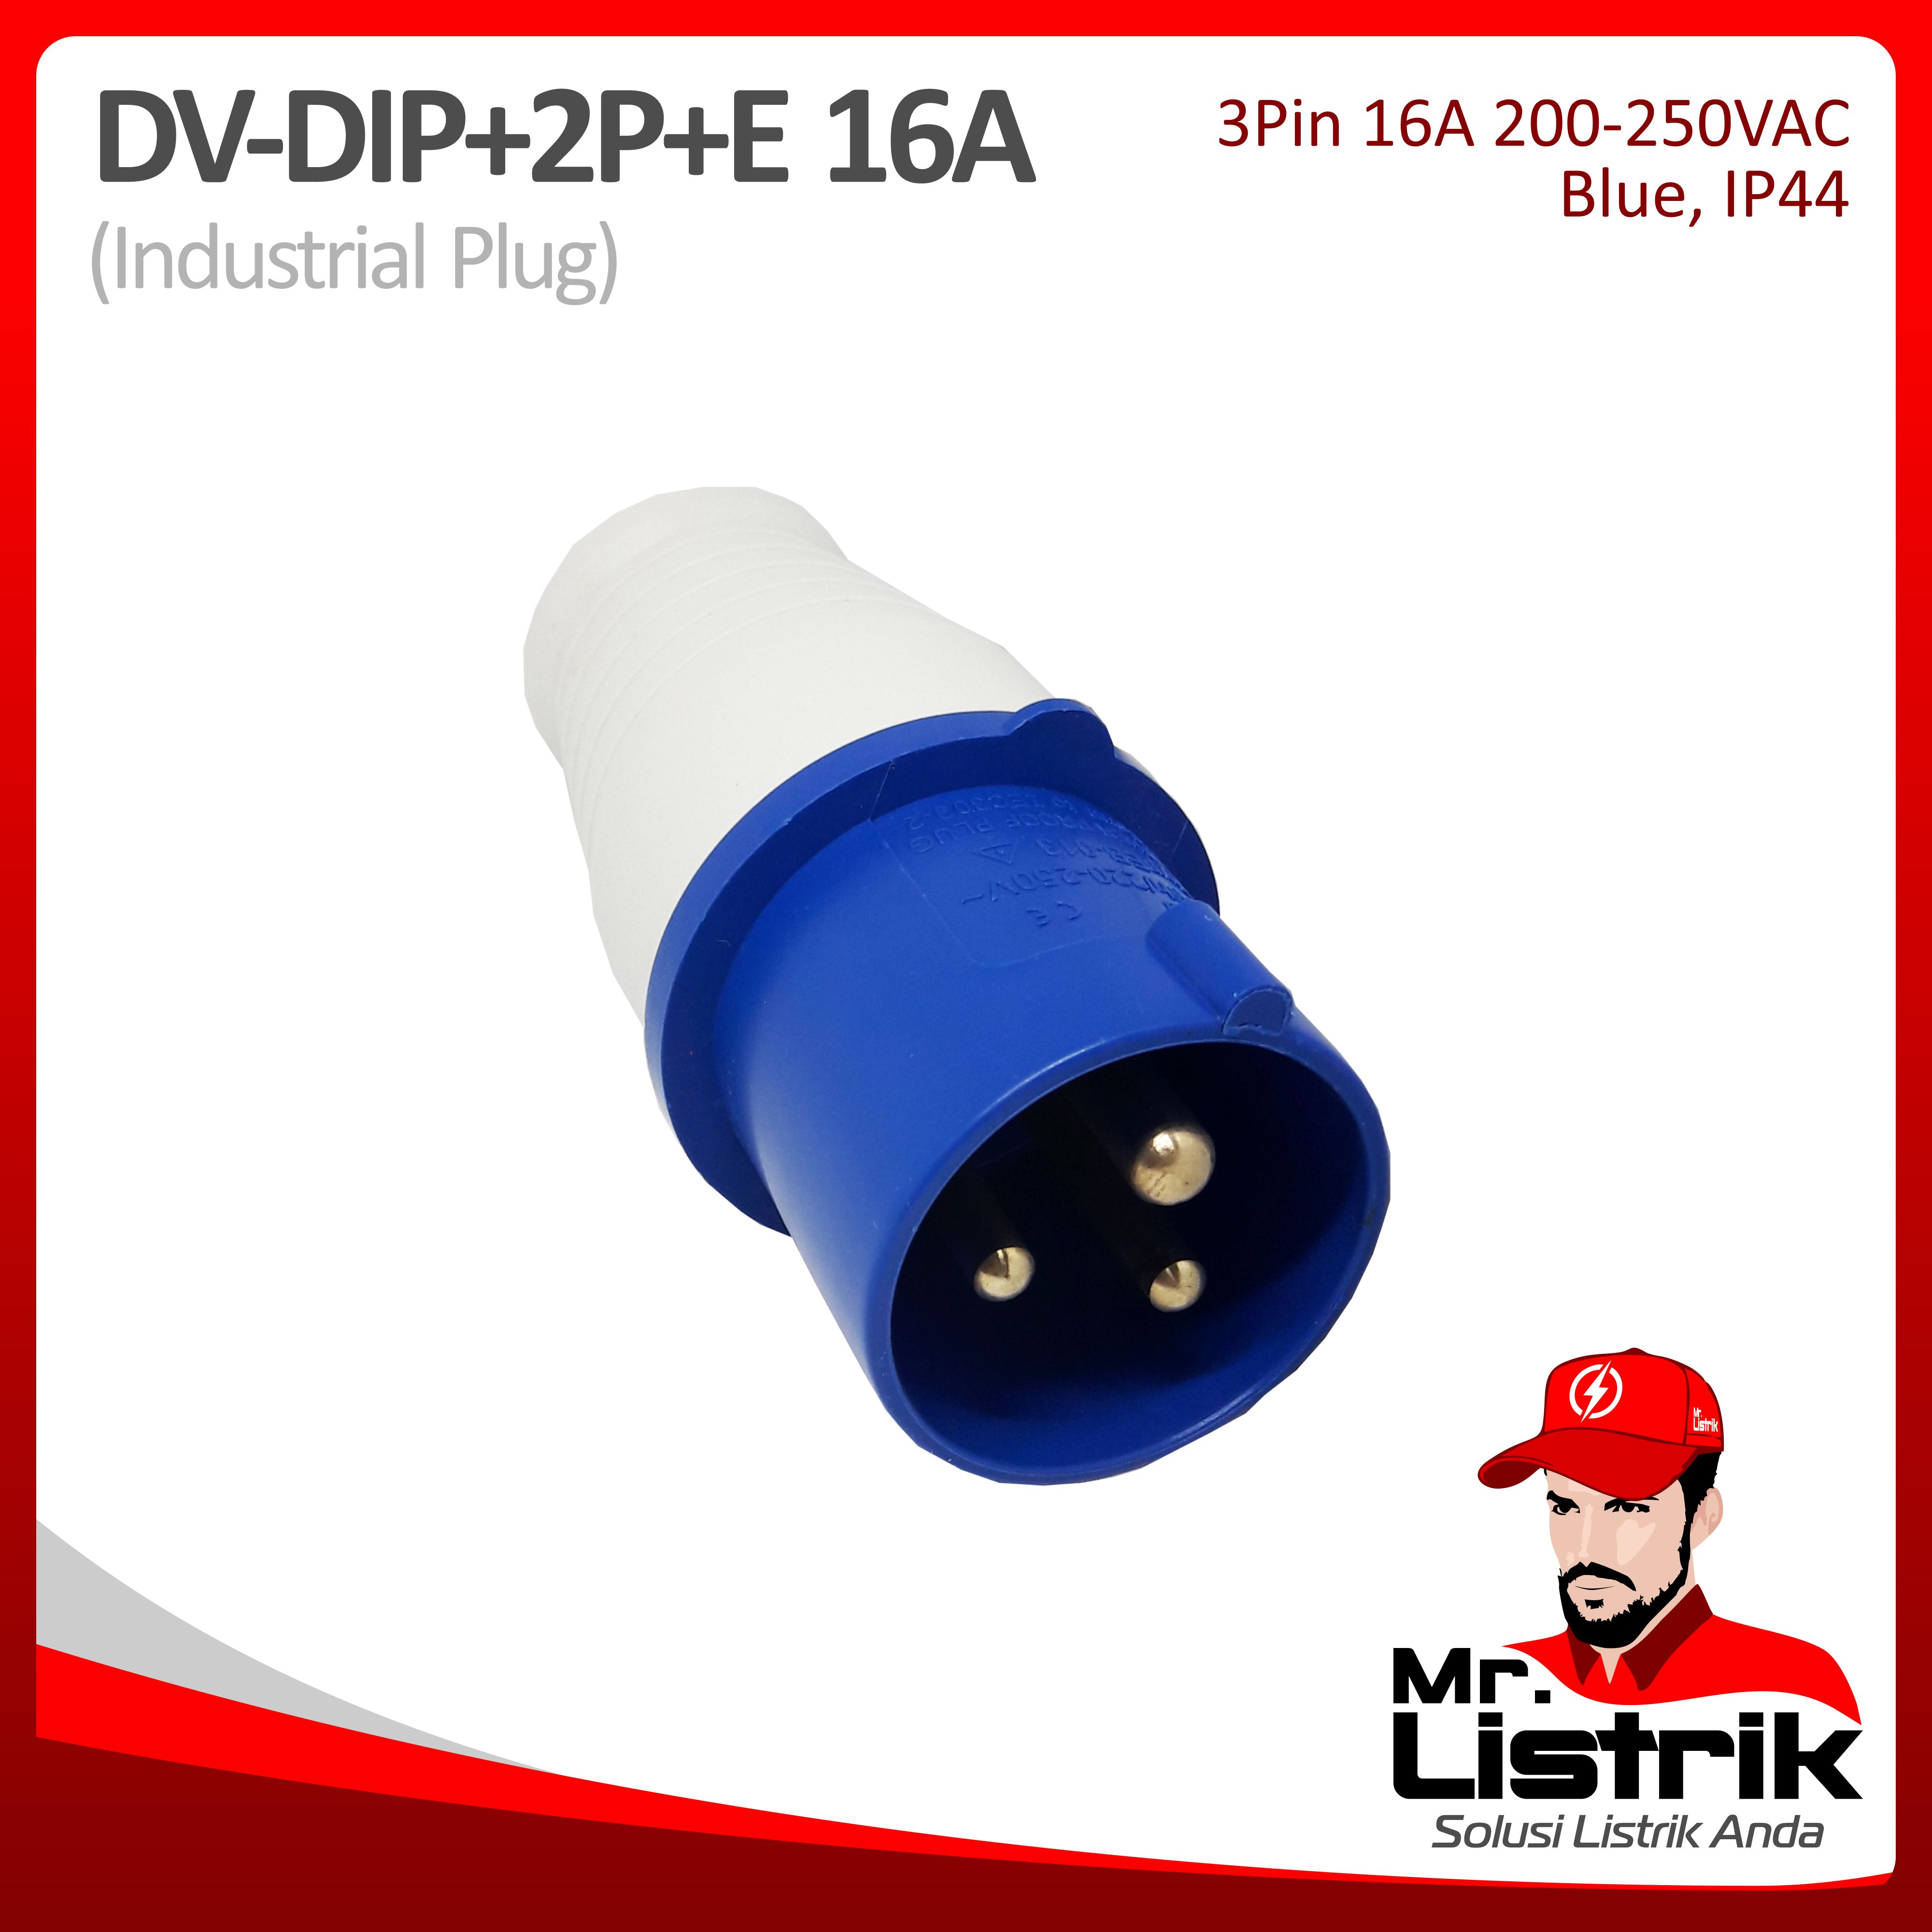 Industrial Plug 3 Pin 16A DV DIP-2P+E-16A